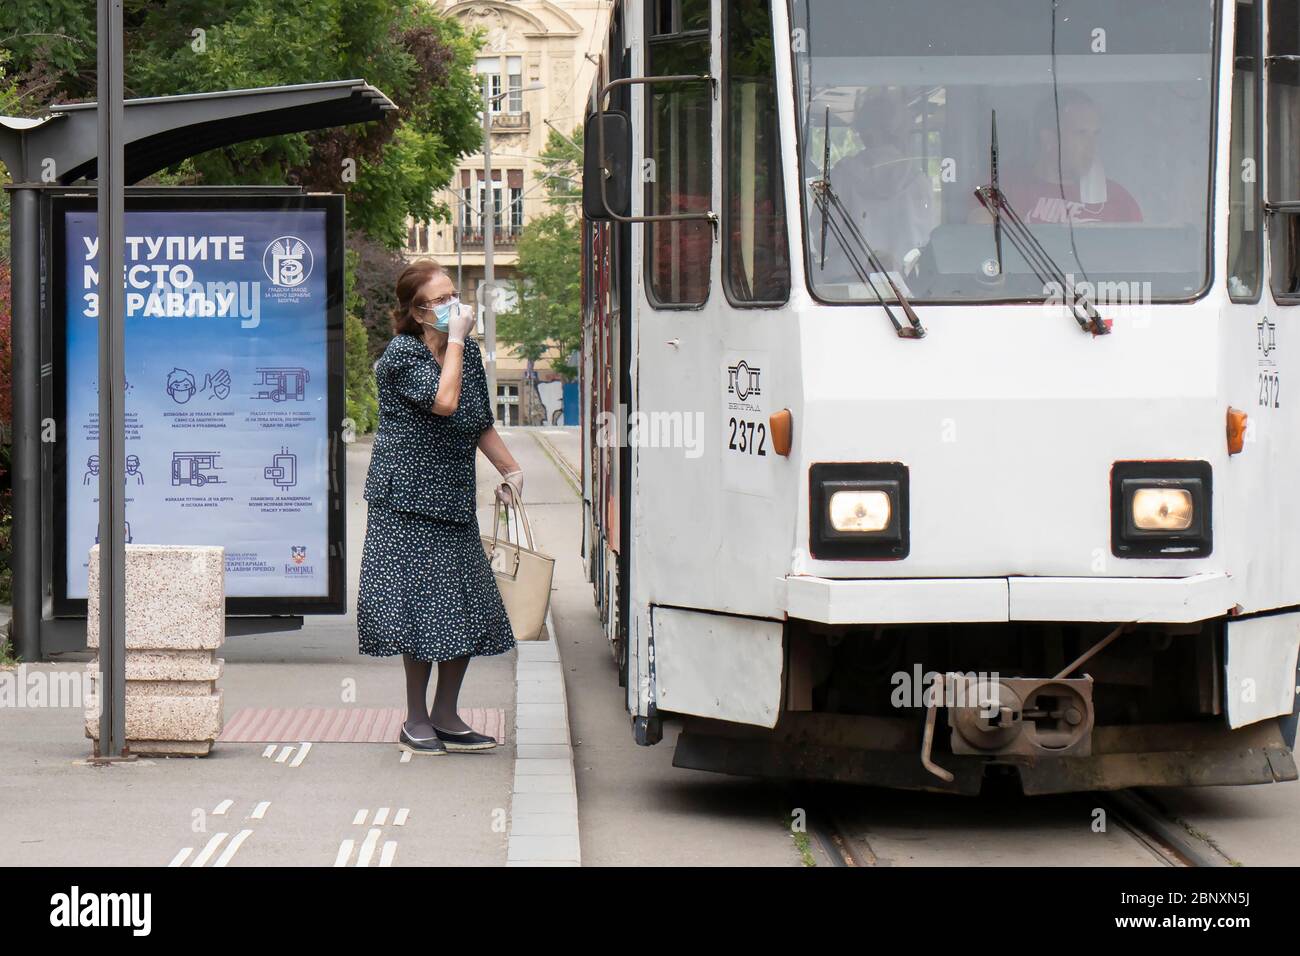 Belgrad, Serbien - 12. Mai 2020: Eine ältere Frau, die eine Gesichtsmaske und Handschuhe trägt, kommt in den öffentlichen Nahverkehr Stockfoto